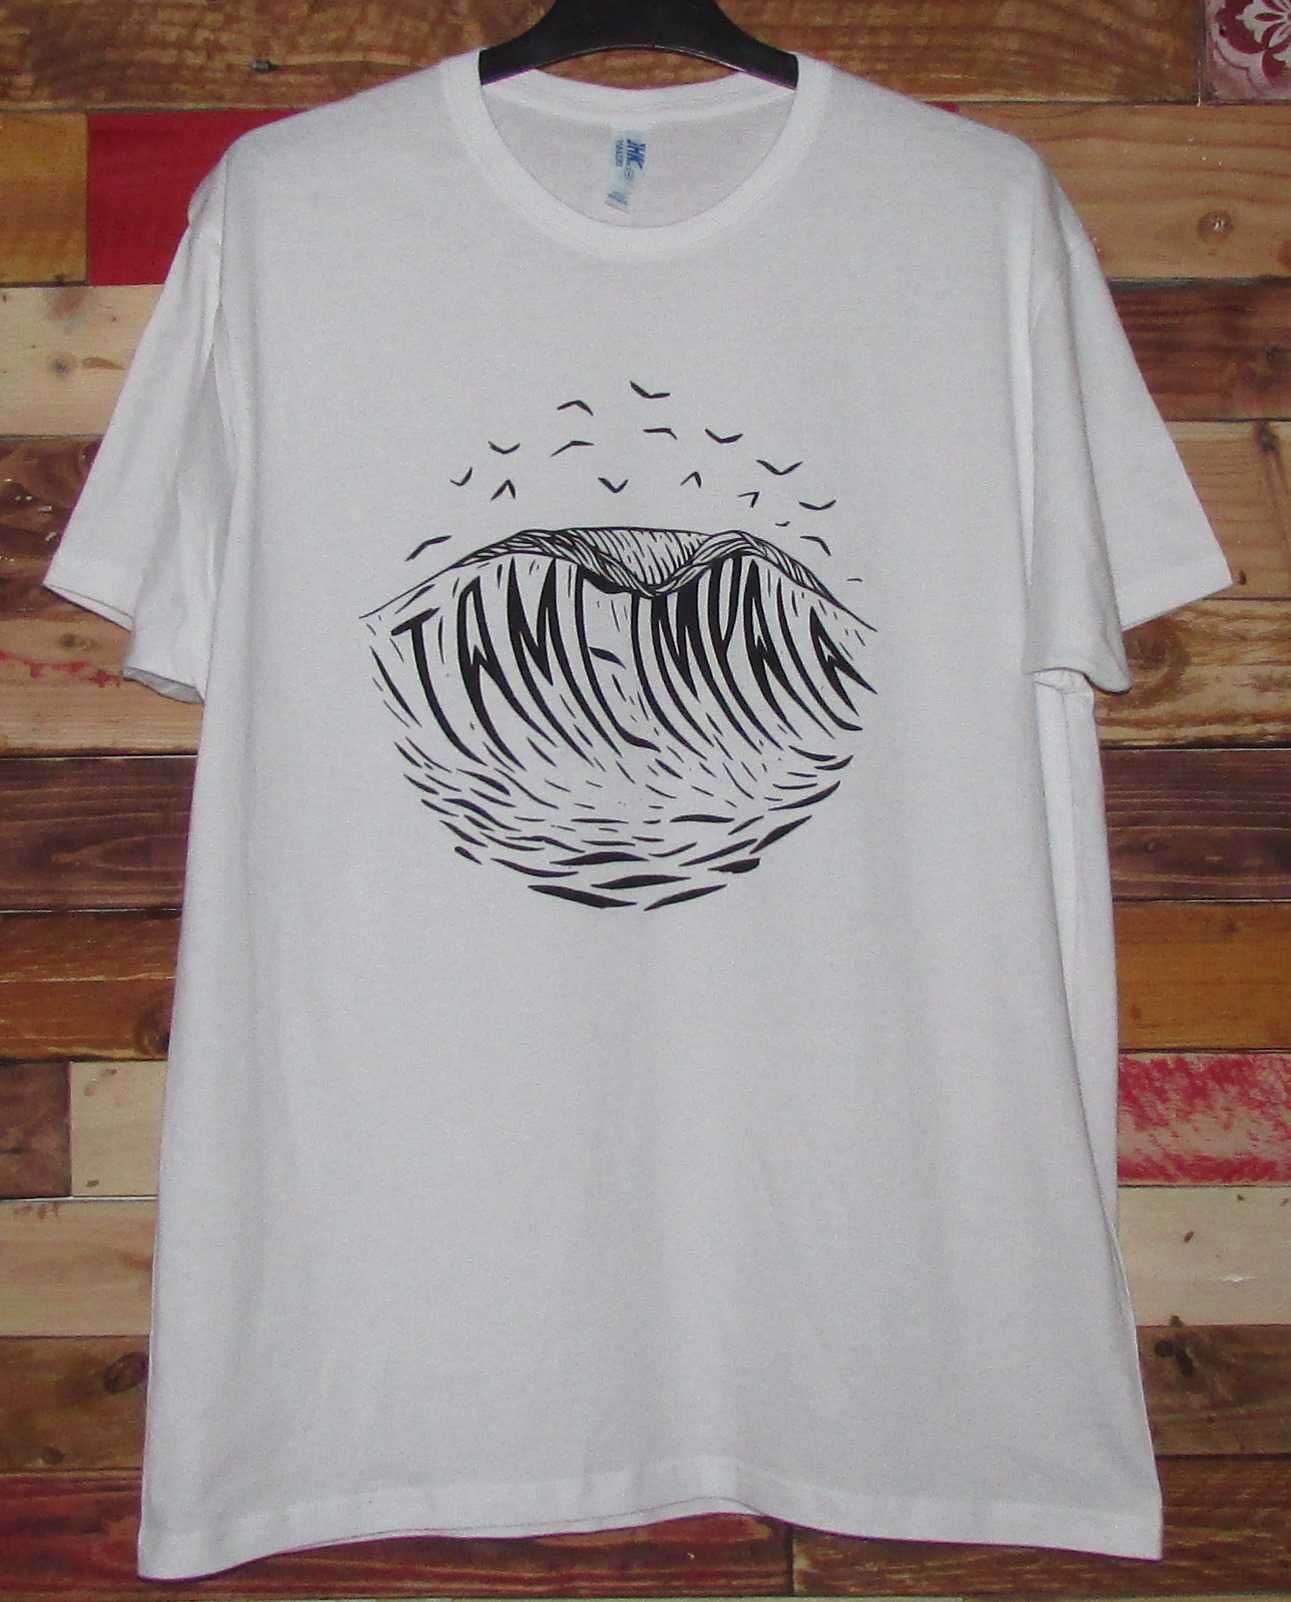 Tame Impala / Mogwai / Sigur Ros / Pond - T-shirt - Nova